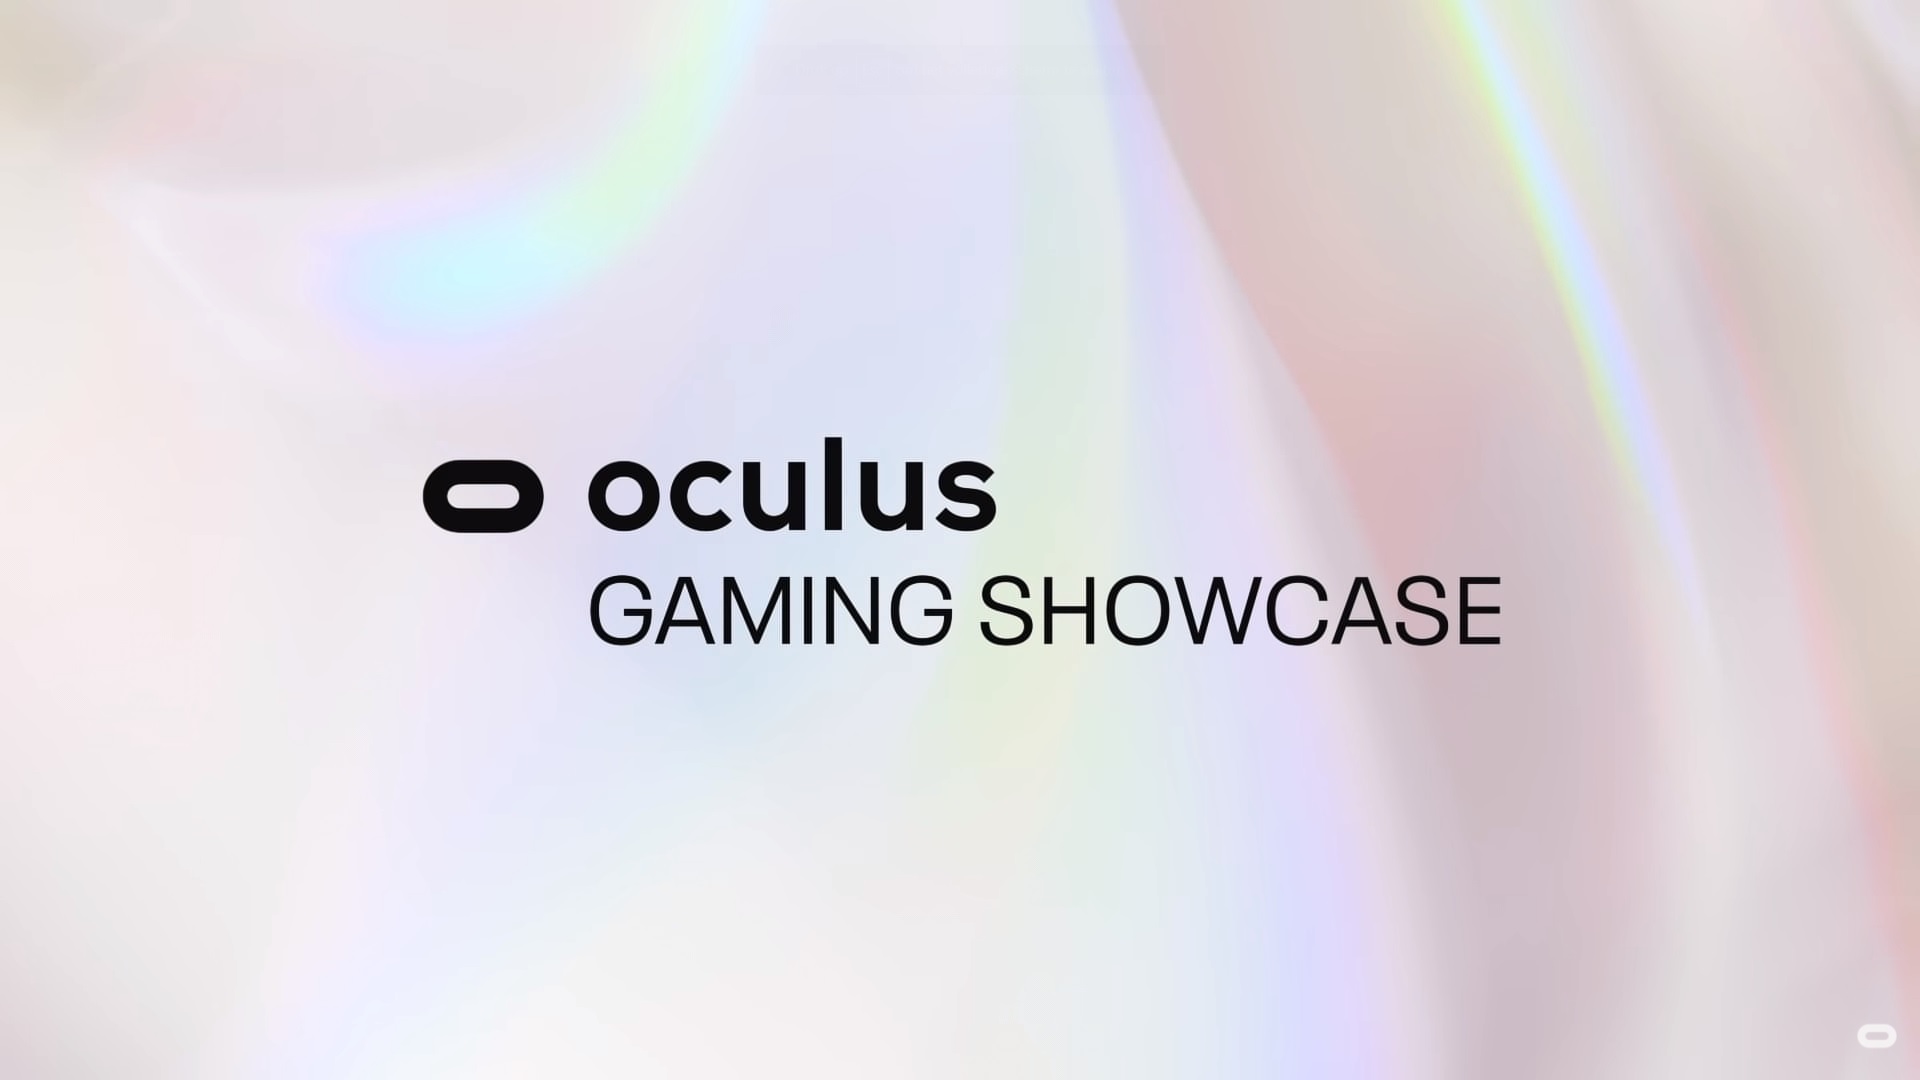 Bekijk hier de Oculus Gaming Showcase terug met alle aankondigingen